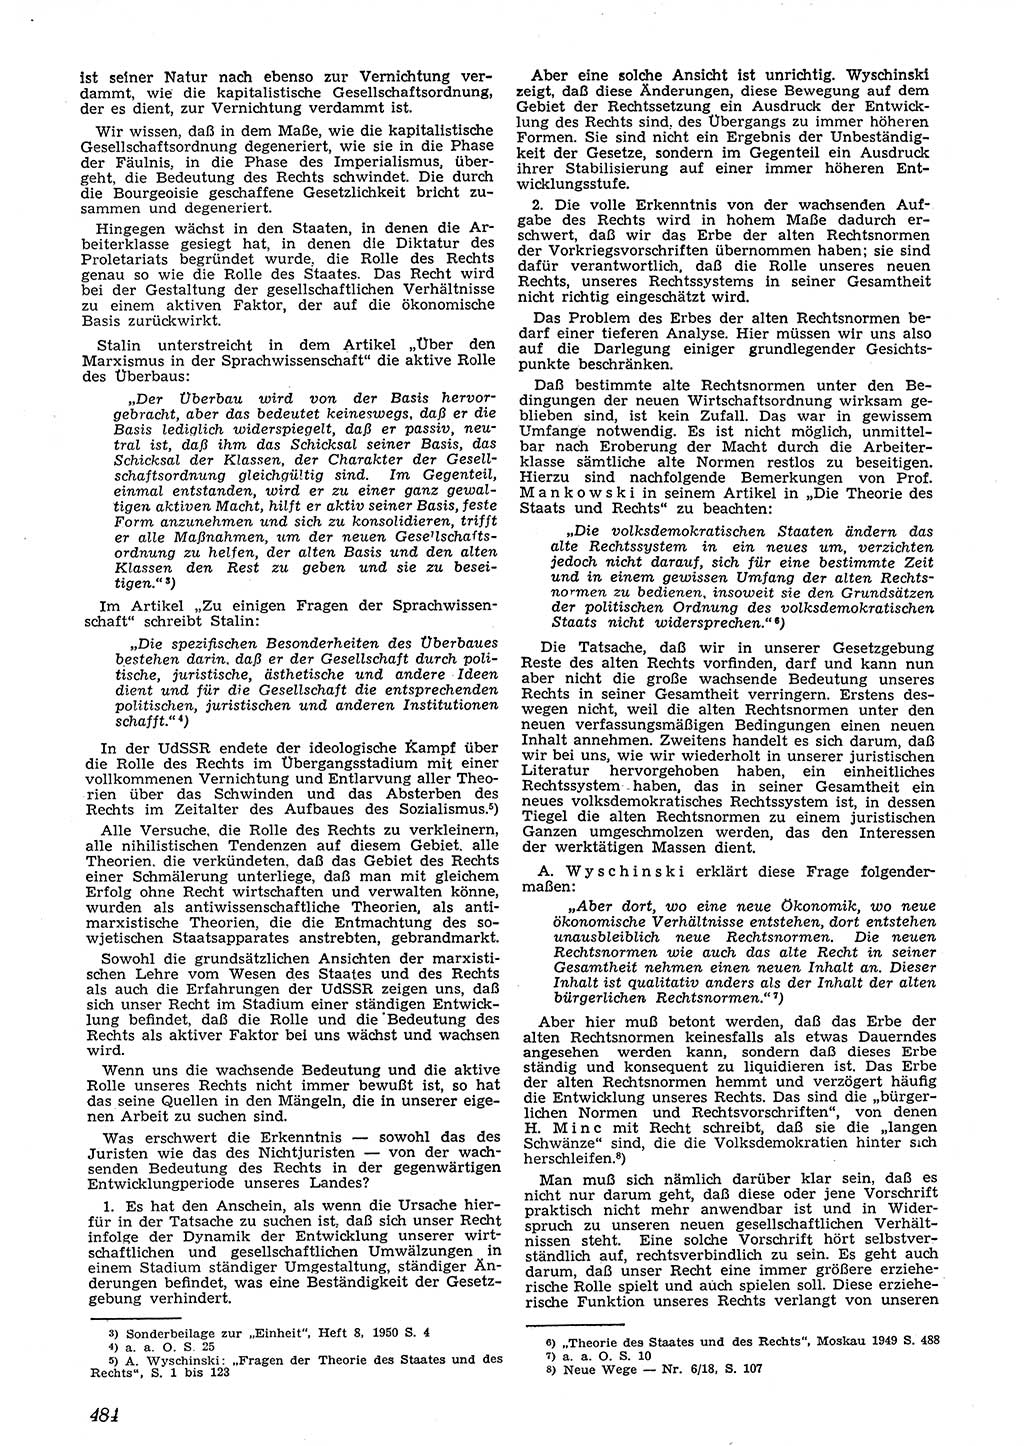 Neue Justiz (NJ), Zeitschrift für Recht und Rechtswissenschaft [Deutsche Demokratische Republik (DDR)], 4. Jahrgang 1950, Seite 484 (NJ DDR 1950, S. 484)